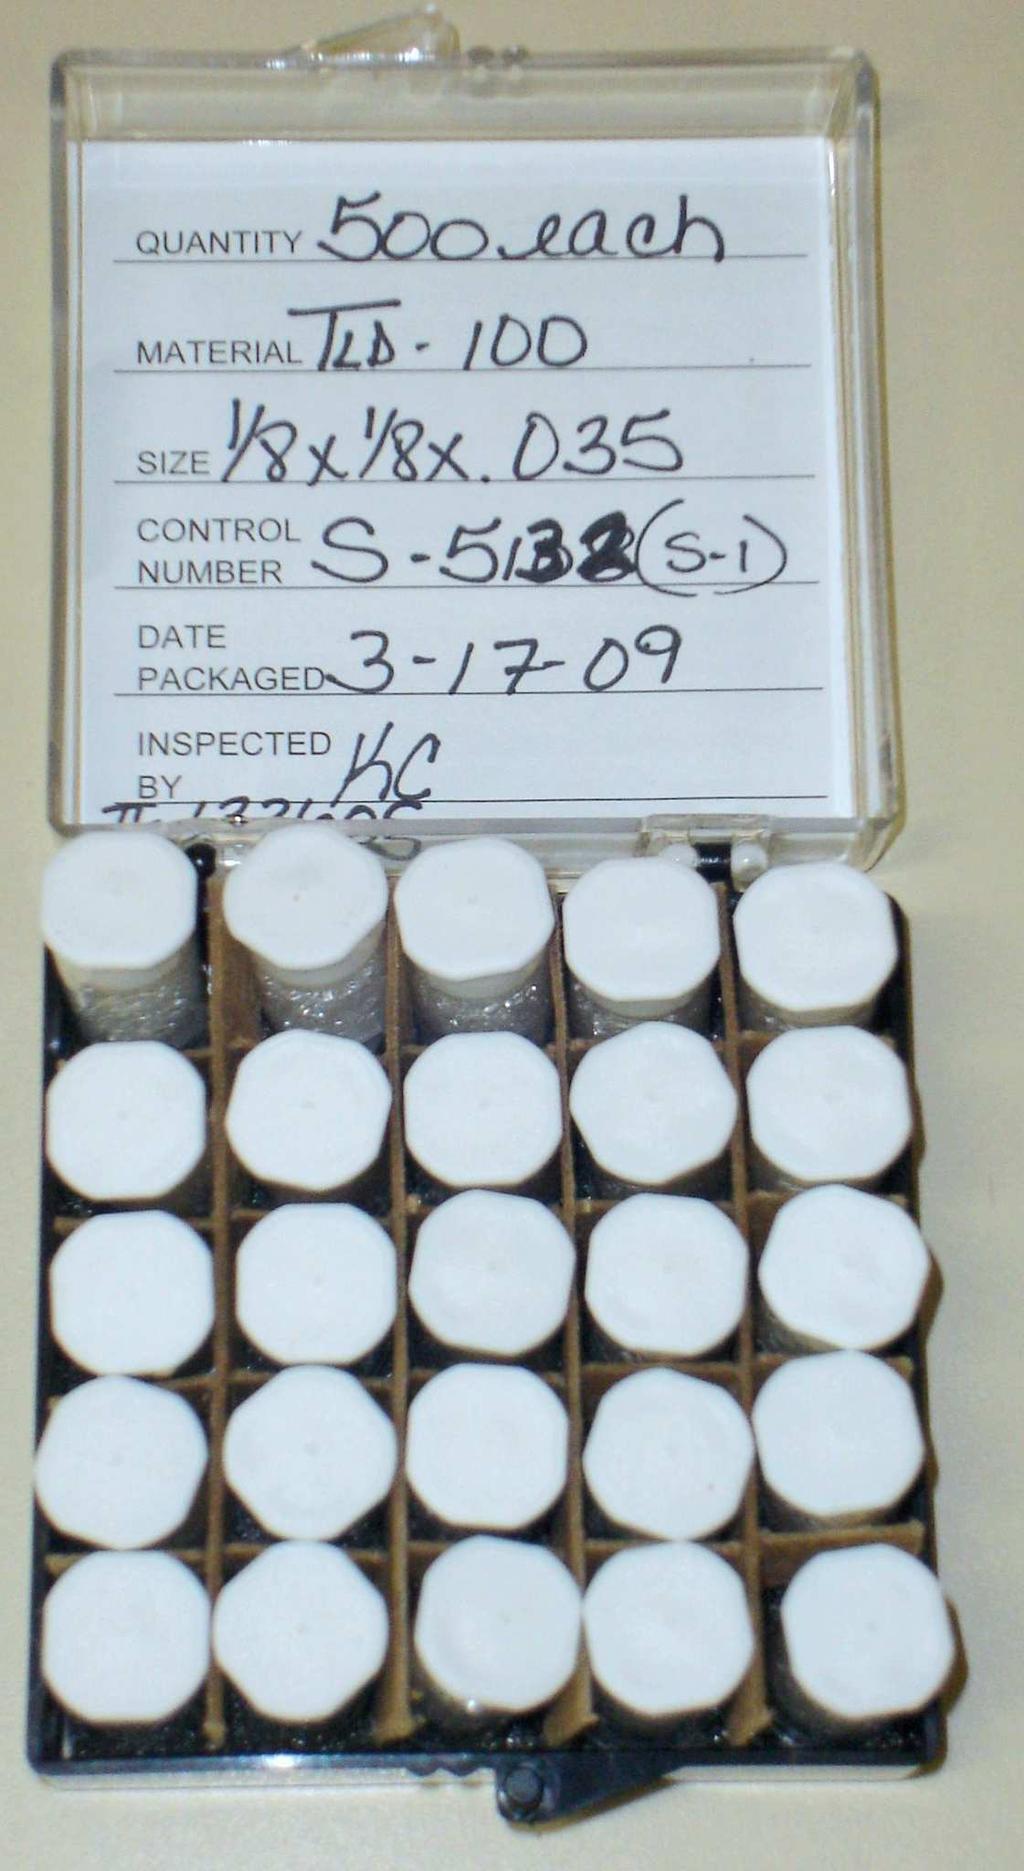 8 - Embalagem comercial contendo as 505 pastilhas virgens de TLD-100 (LiF: Mg, Ti) utilizadas no presente trabalho.